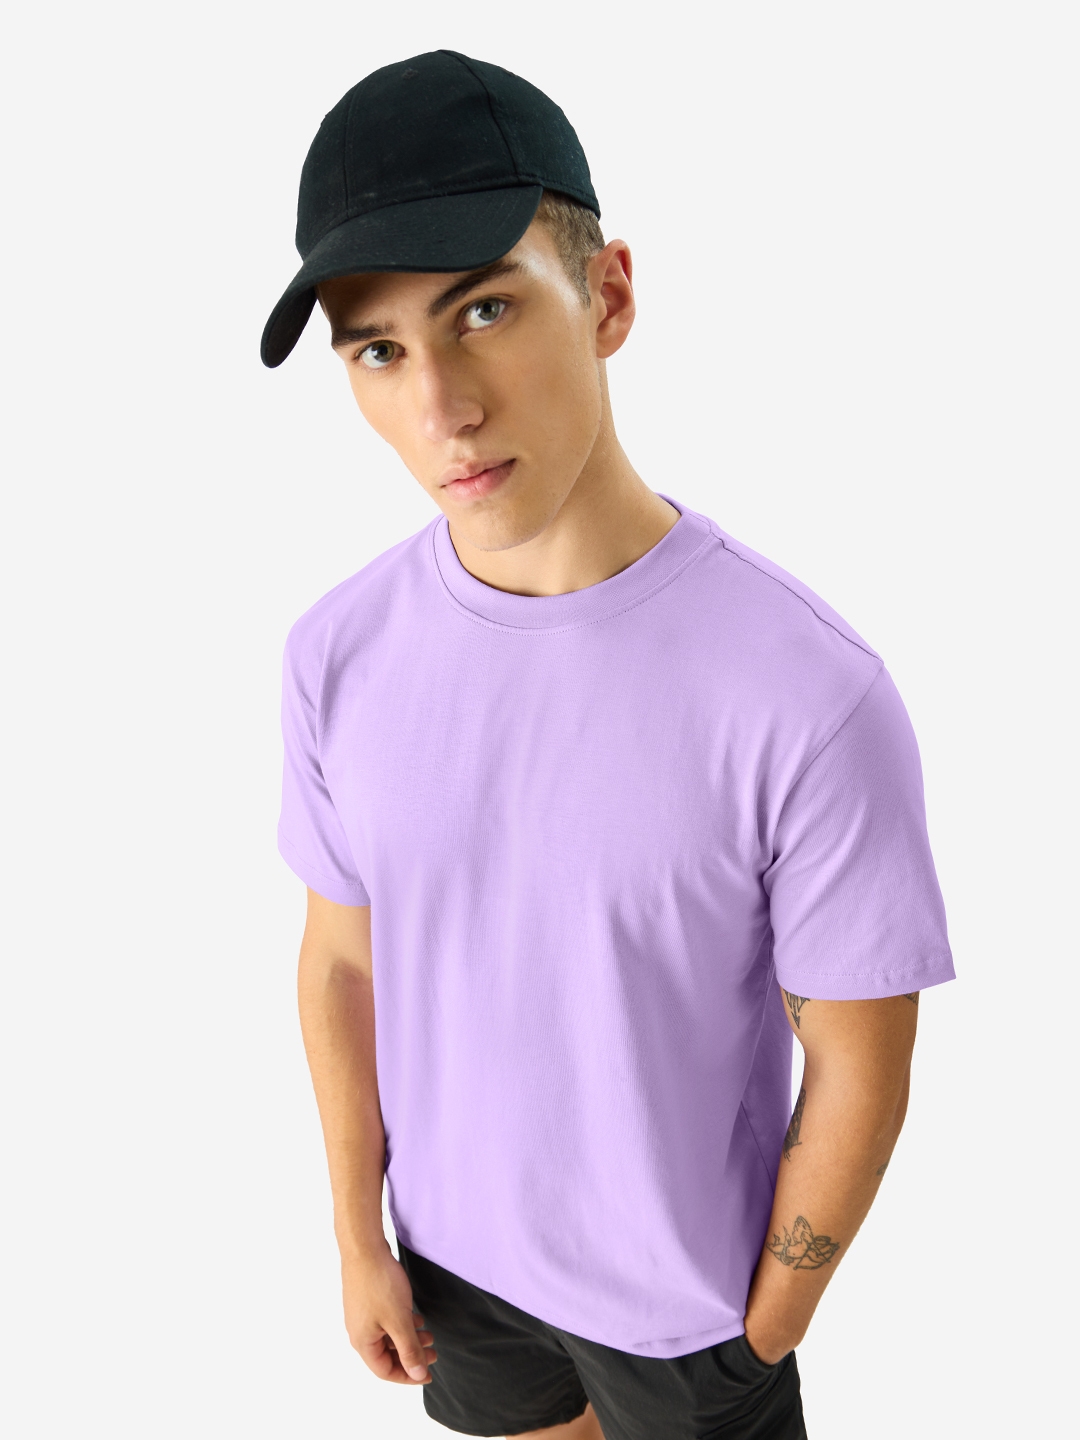 Men's Solids: Deep Lavender T-Shirt